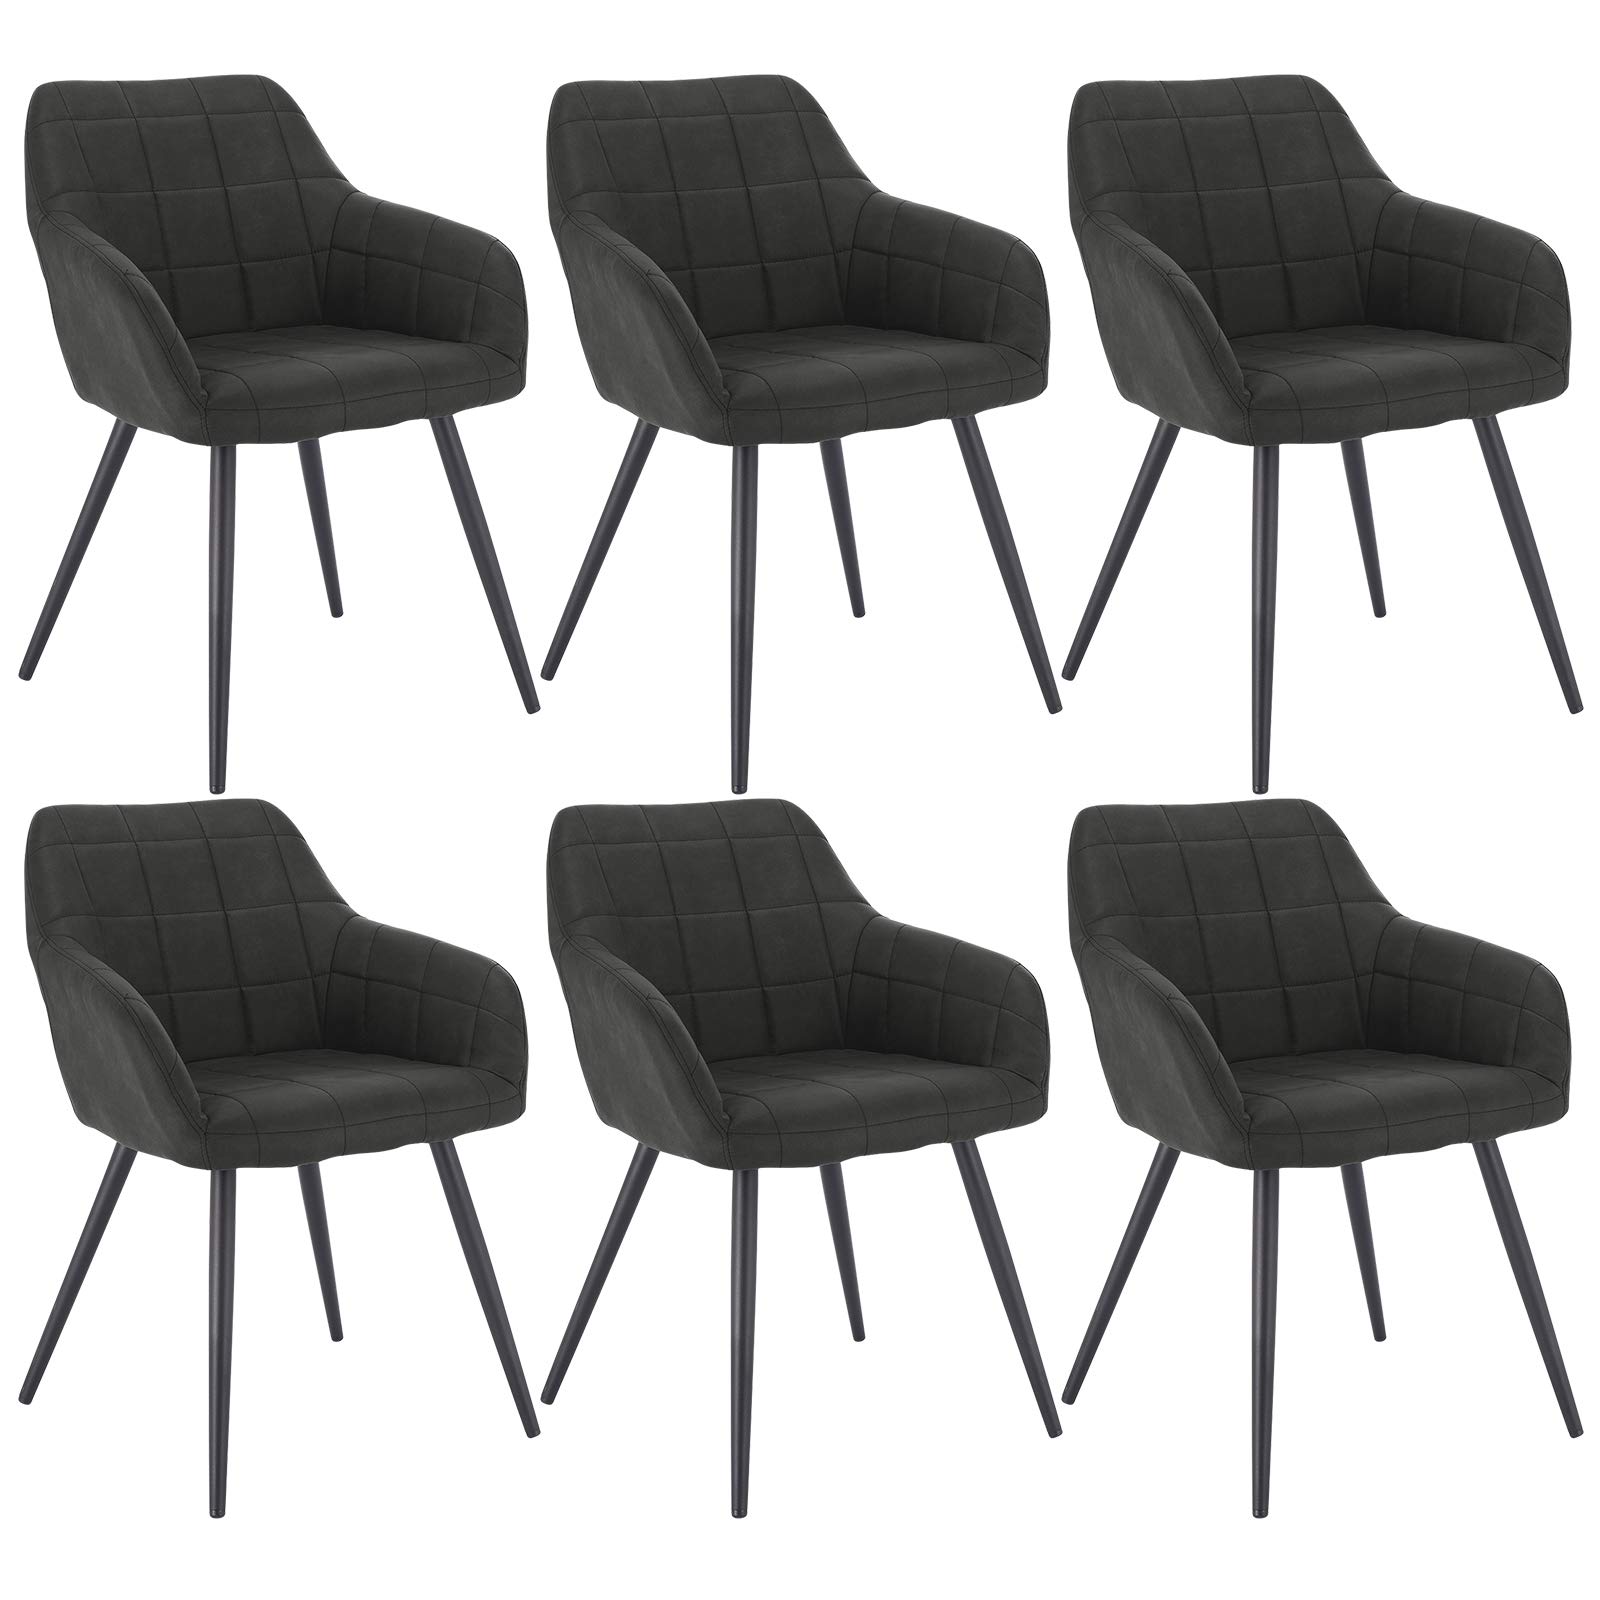 WOLTU 6 x Esszimmerstühle 6er Set Esszimmerstuhl Küchenstuhl Polsterstuhl Design Stuhl mit Armlehnen, mit Sitzfläche aus Stoffbezug, Gestell aus Metall, Anthrazit, BH224an-6